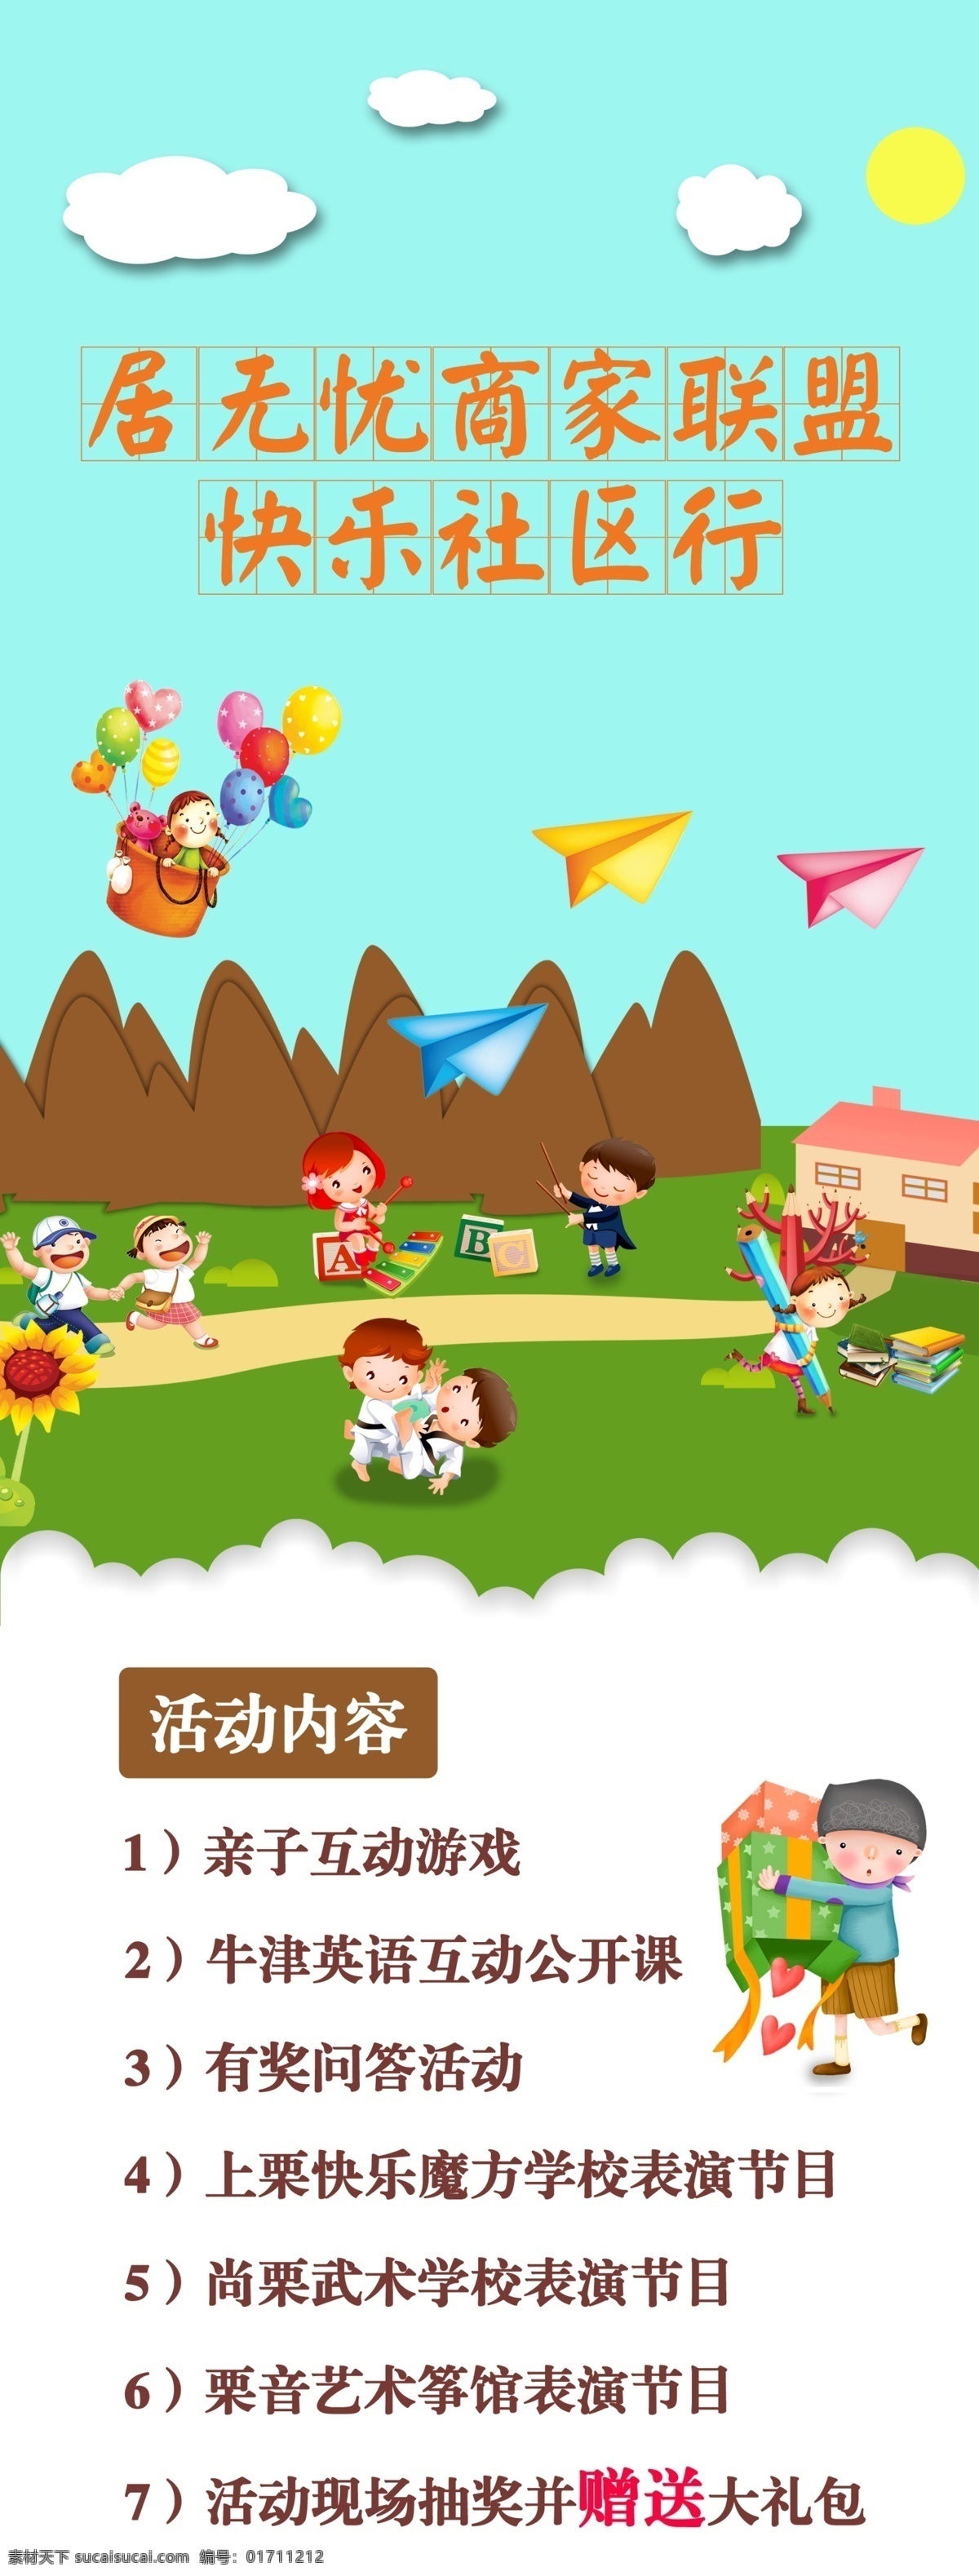 快乐 社区 行 展板 儿童节 六一 快乐社区 亲子活动 幼儿 学习 小孩子 音乐 武术 上学 飞机 气球 云彩 英语 写作 展板模板 白色